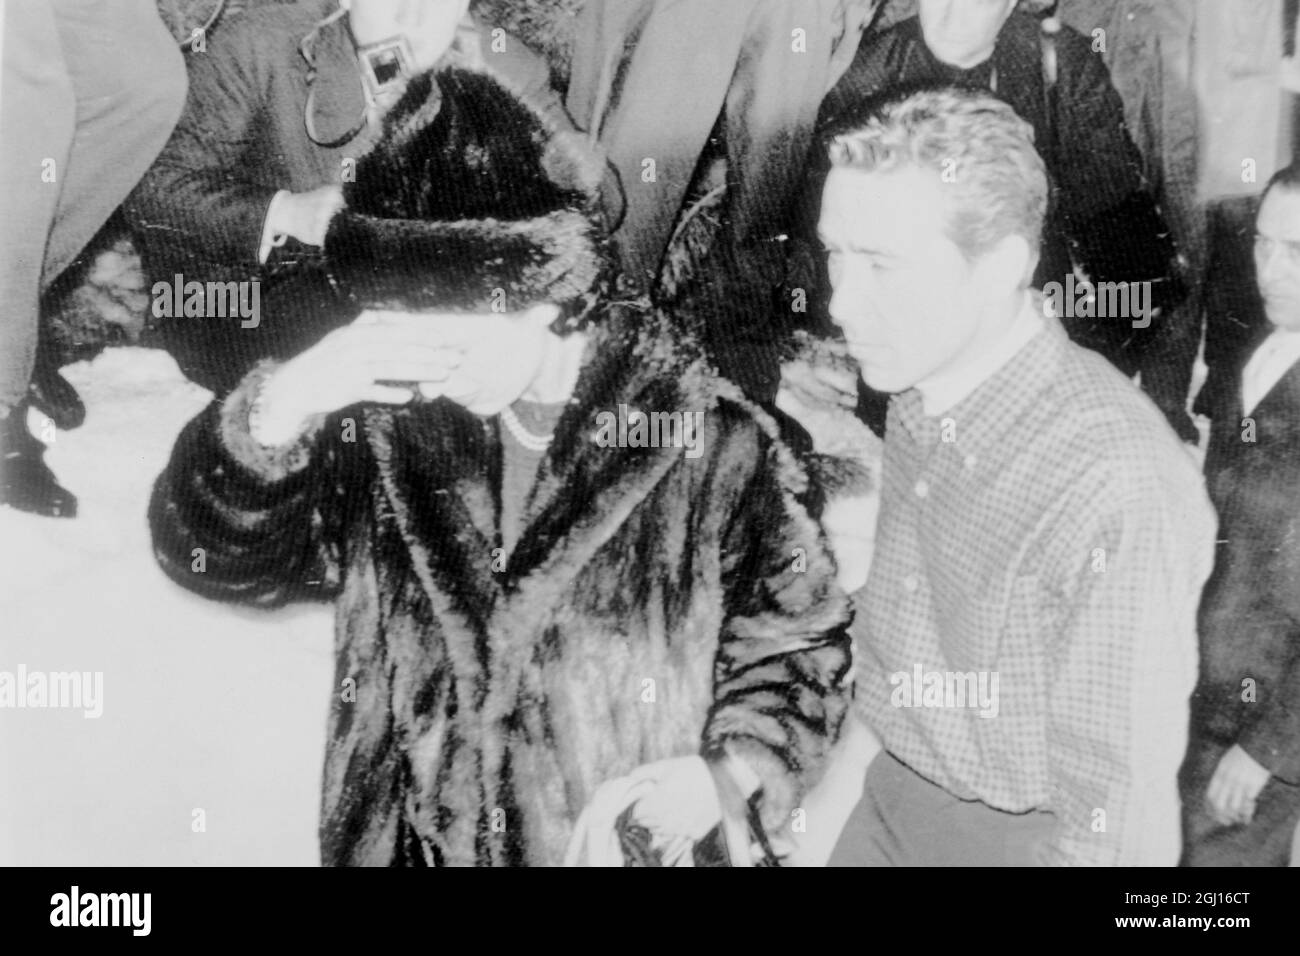 LA PRINCIPESSA MARGARET ROSE E L'ETERNO SNOWDON IN ALBERGO DI SCI IN SVIZZERA ; 27 MARZO 1963 Foto Stock